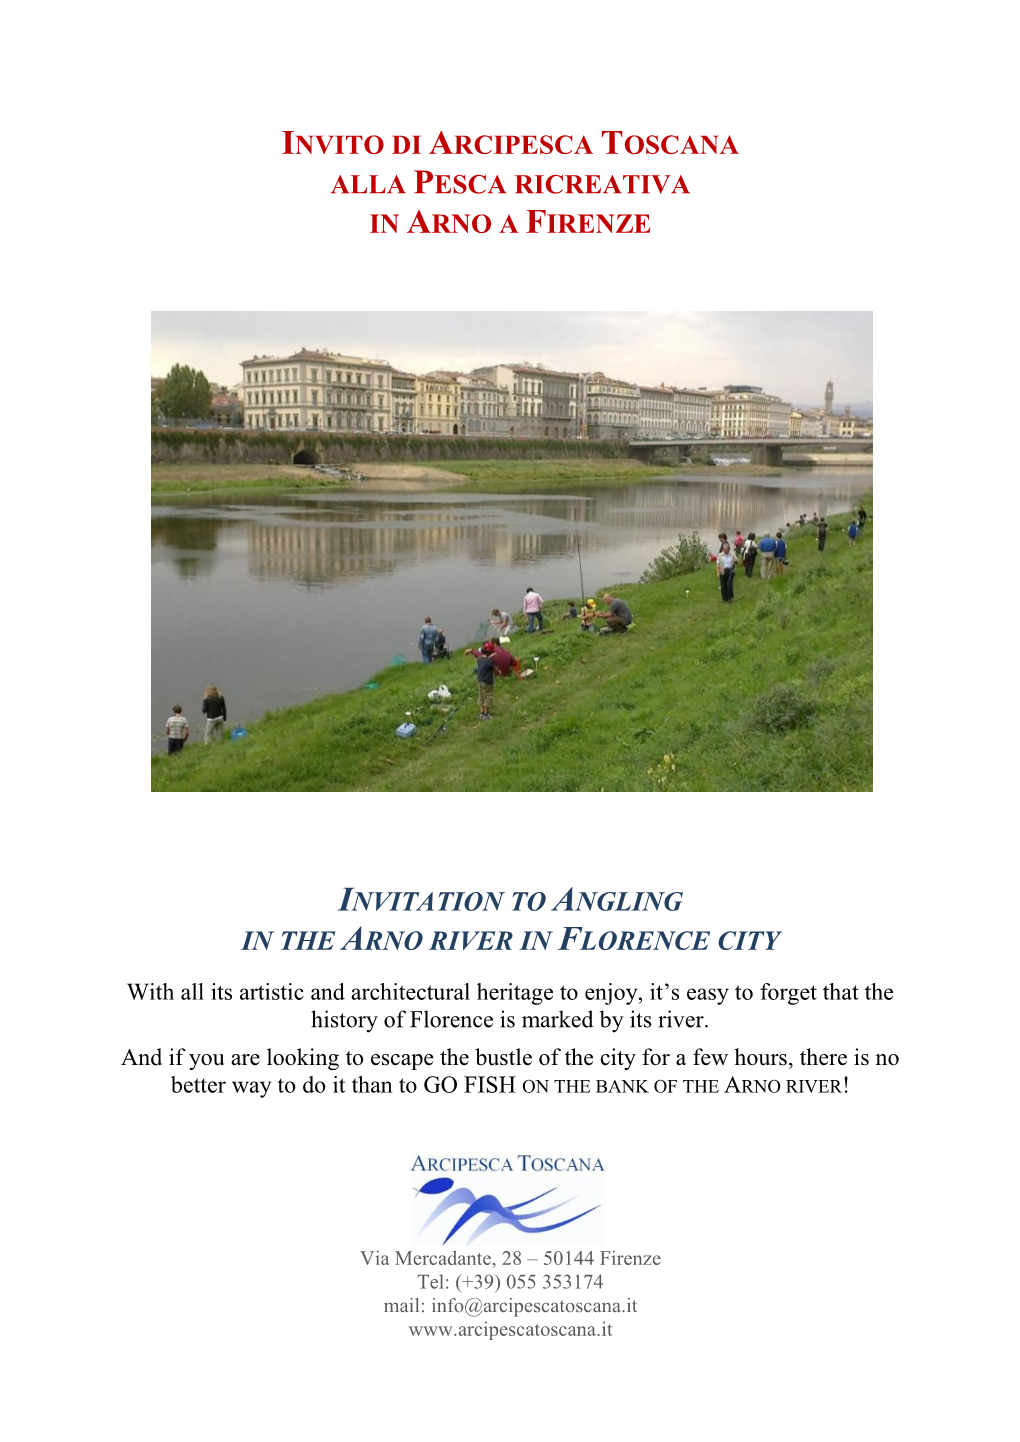 Invito Alla Pesca Ricreativa in Arno a Firenze